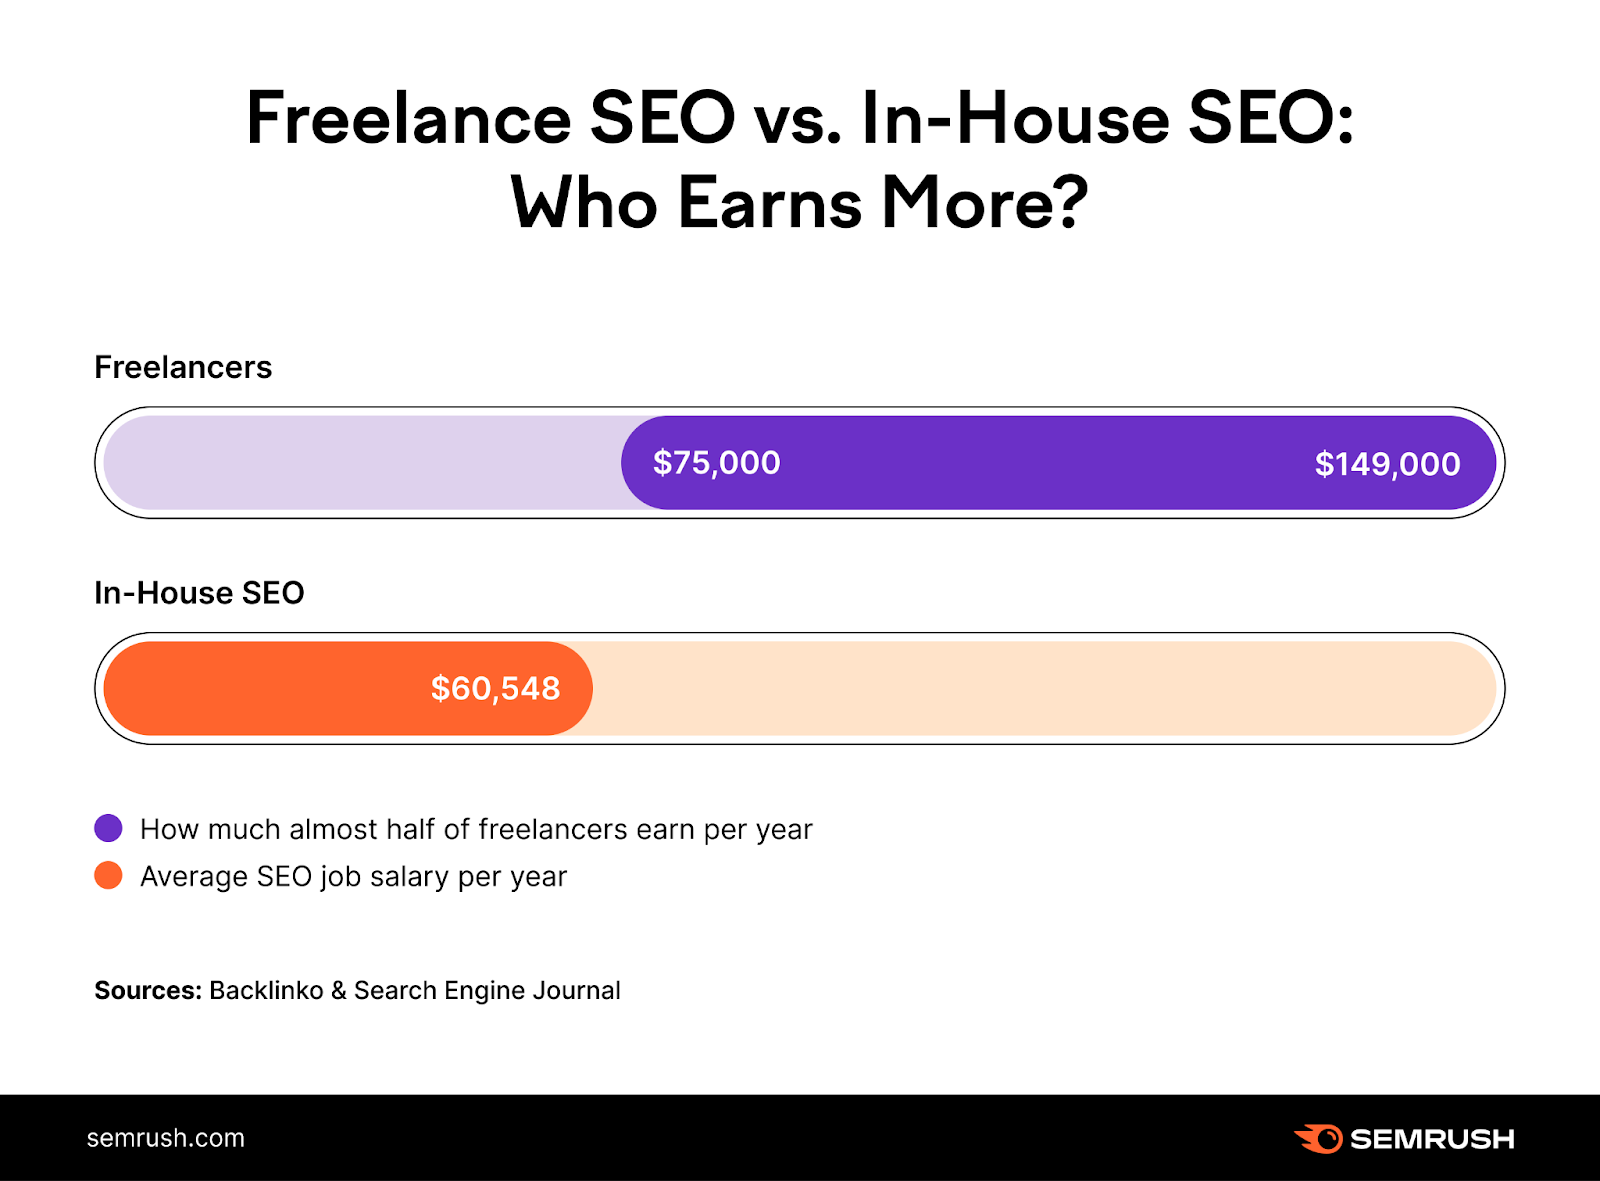 "Freelance SEO vs. In-House SEO: Who Earns More?"